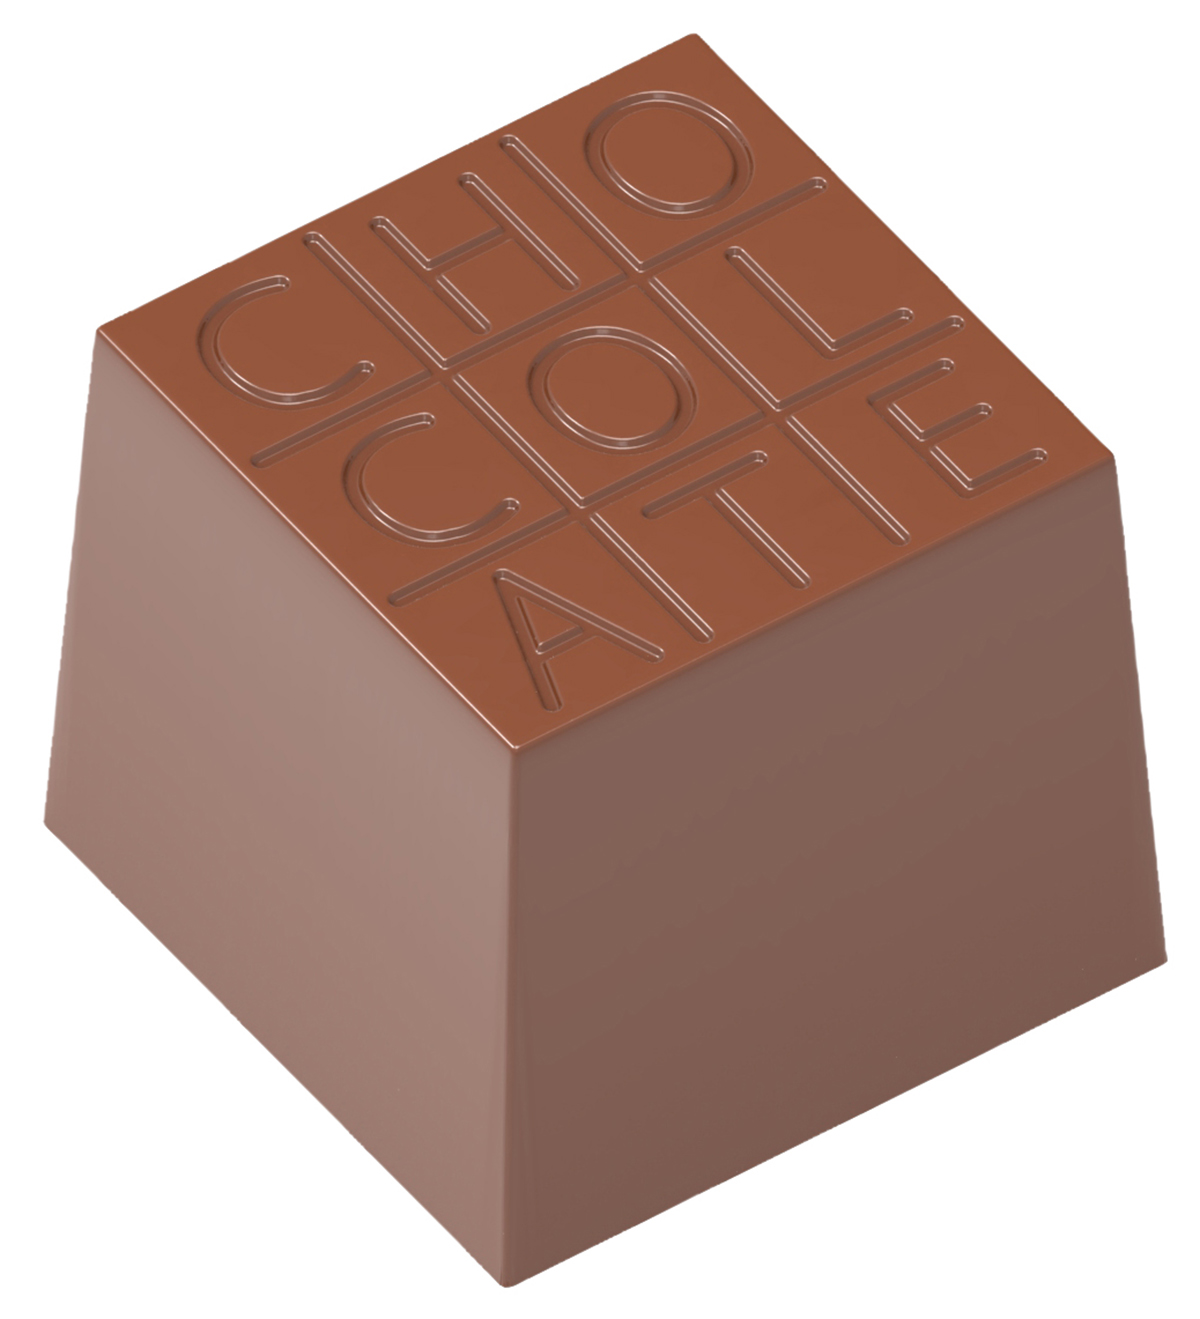 Billede af Professionel chokoladeform i polycarbonat - Cube "Chocolate" CW1729